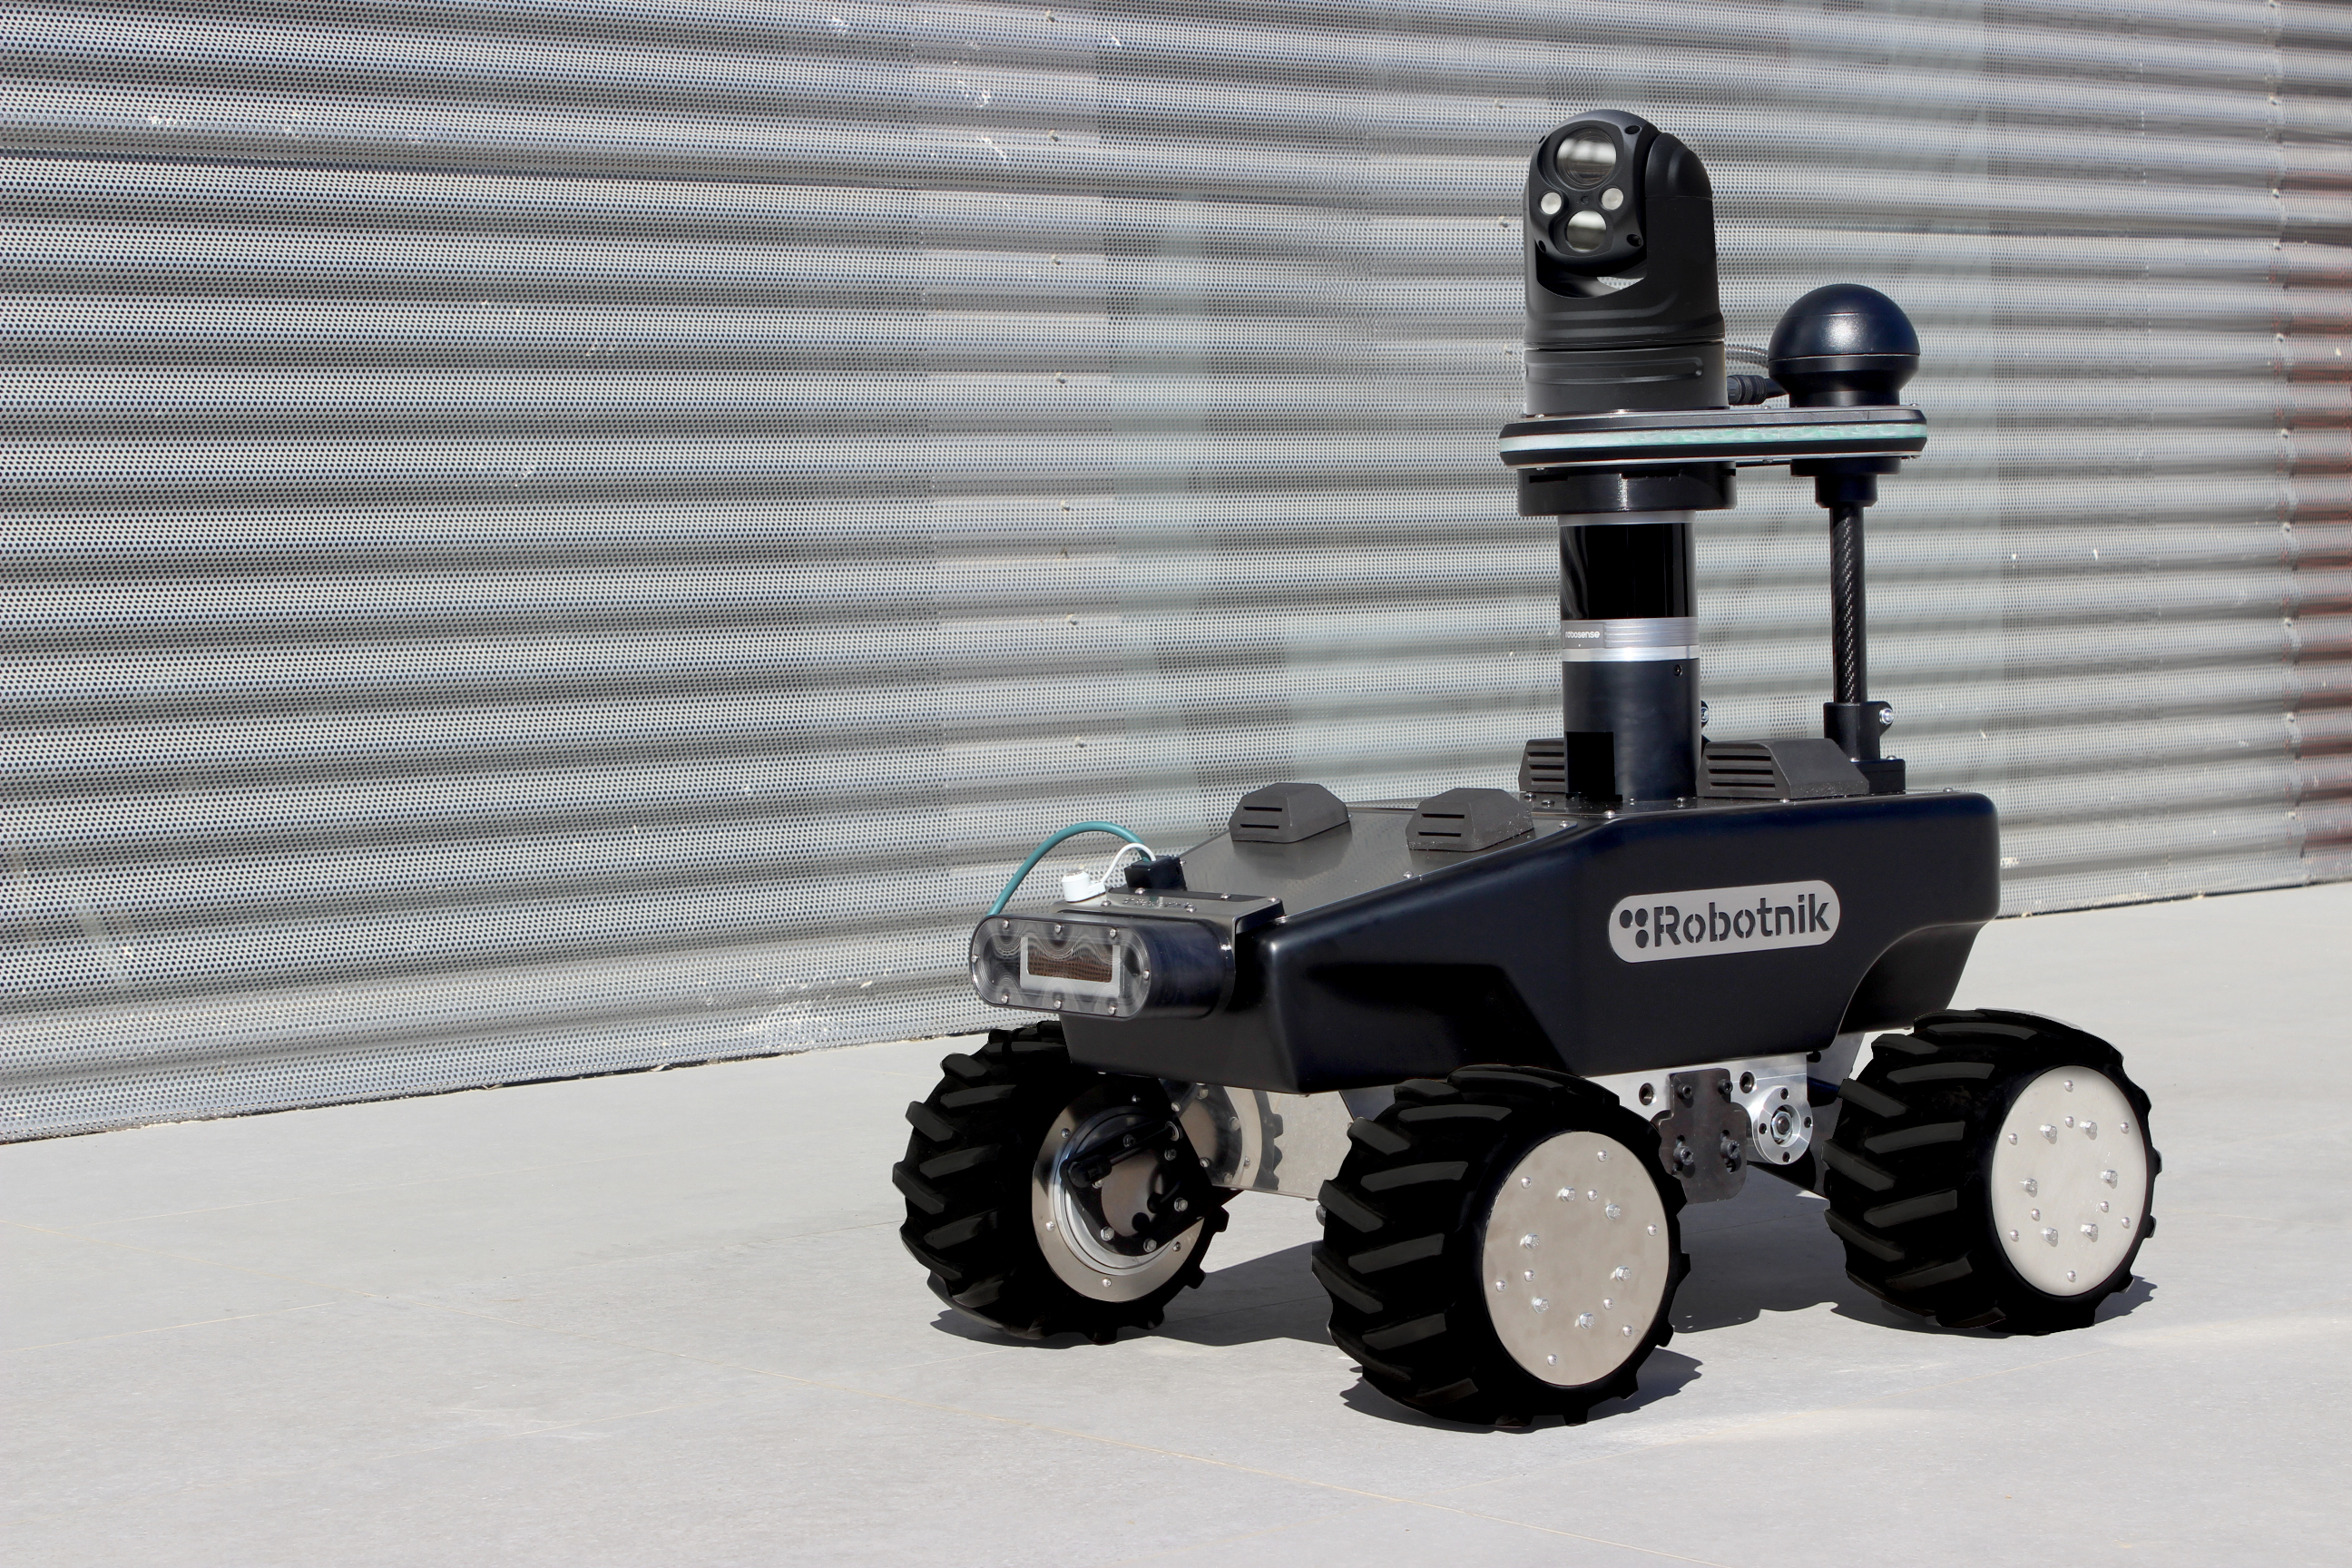 RB-WATCHER: Robotnik presenta su nuevo robot móvil para vigilancia